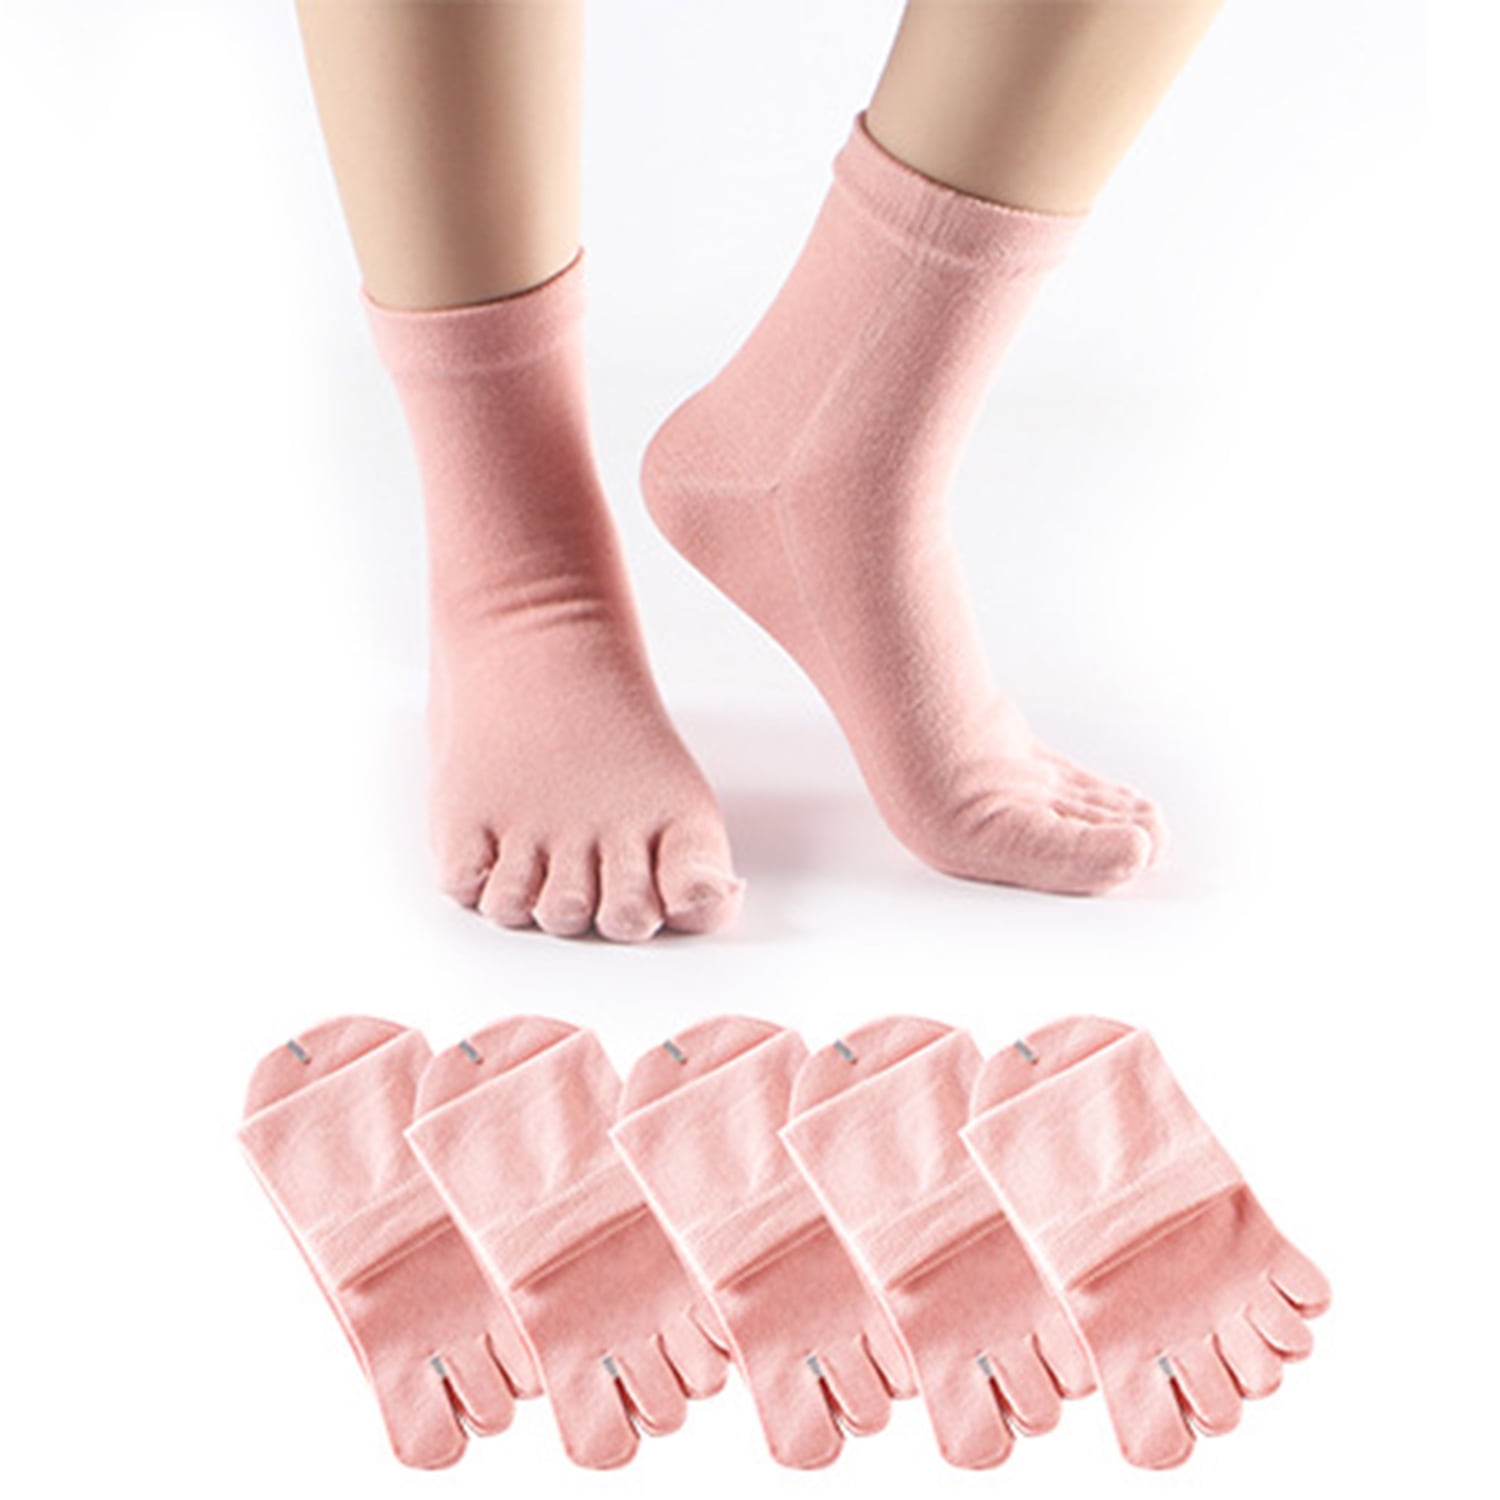 6 Pairs Women's Toe Socks Cotton Five Toe Finger Socks Toe Separator ...